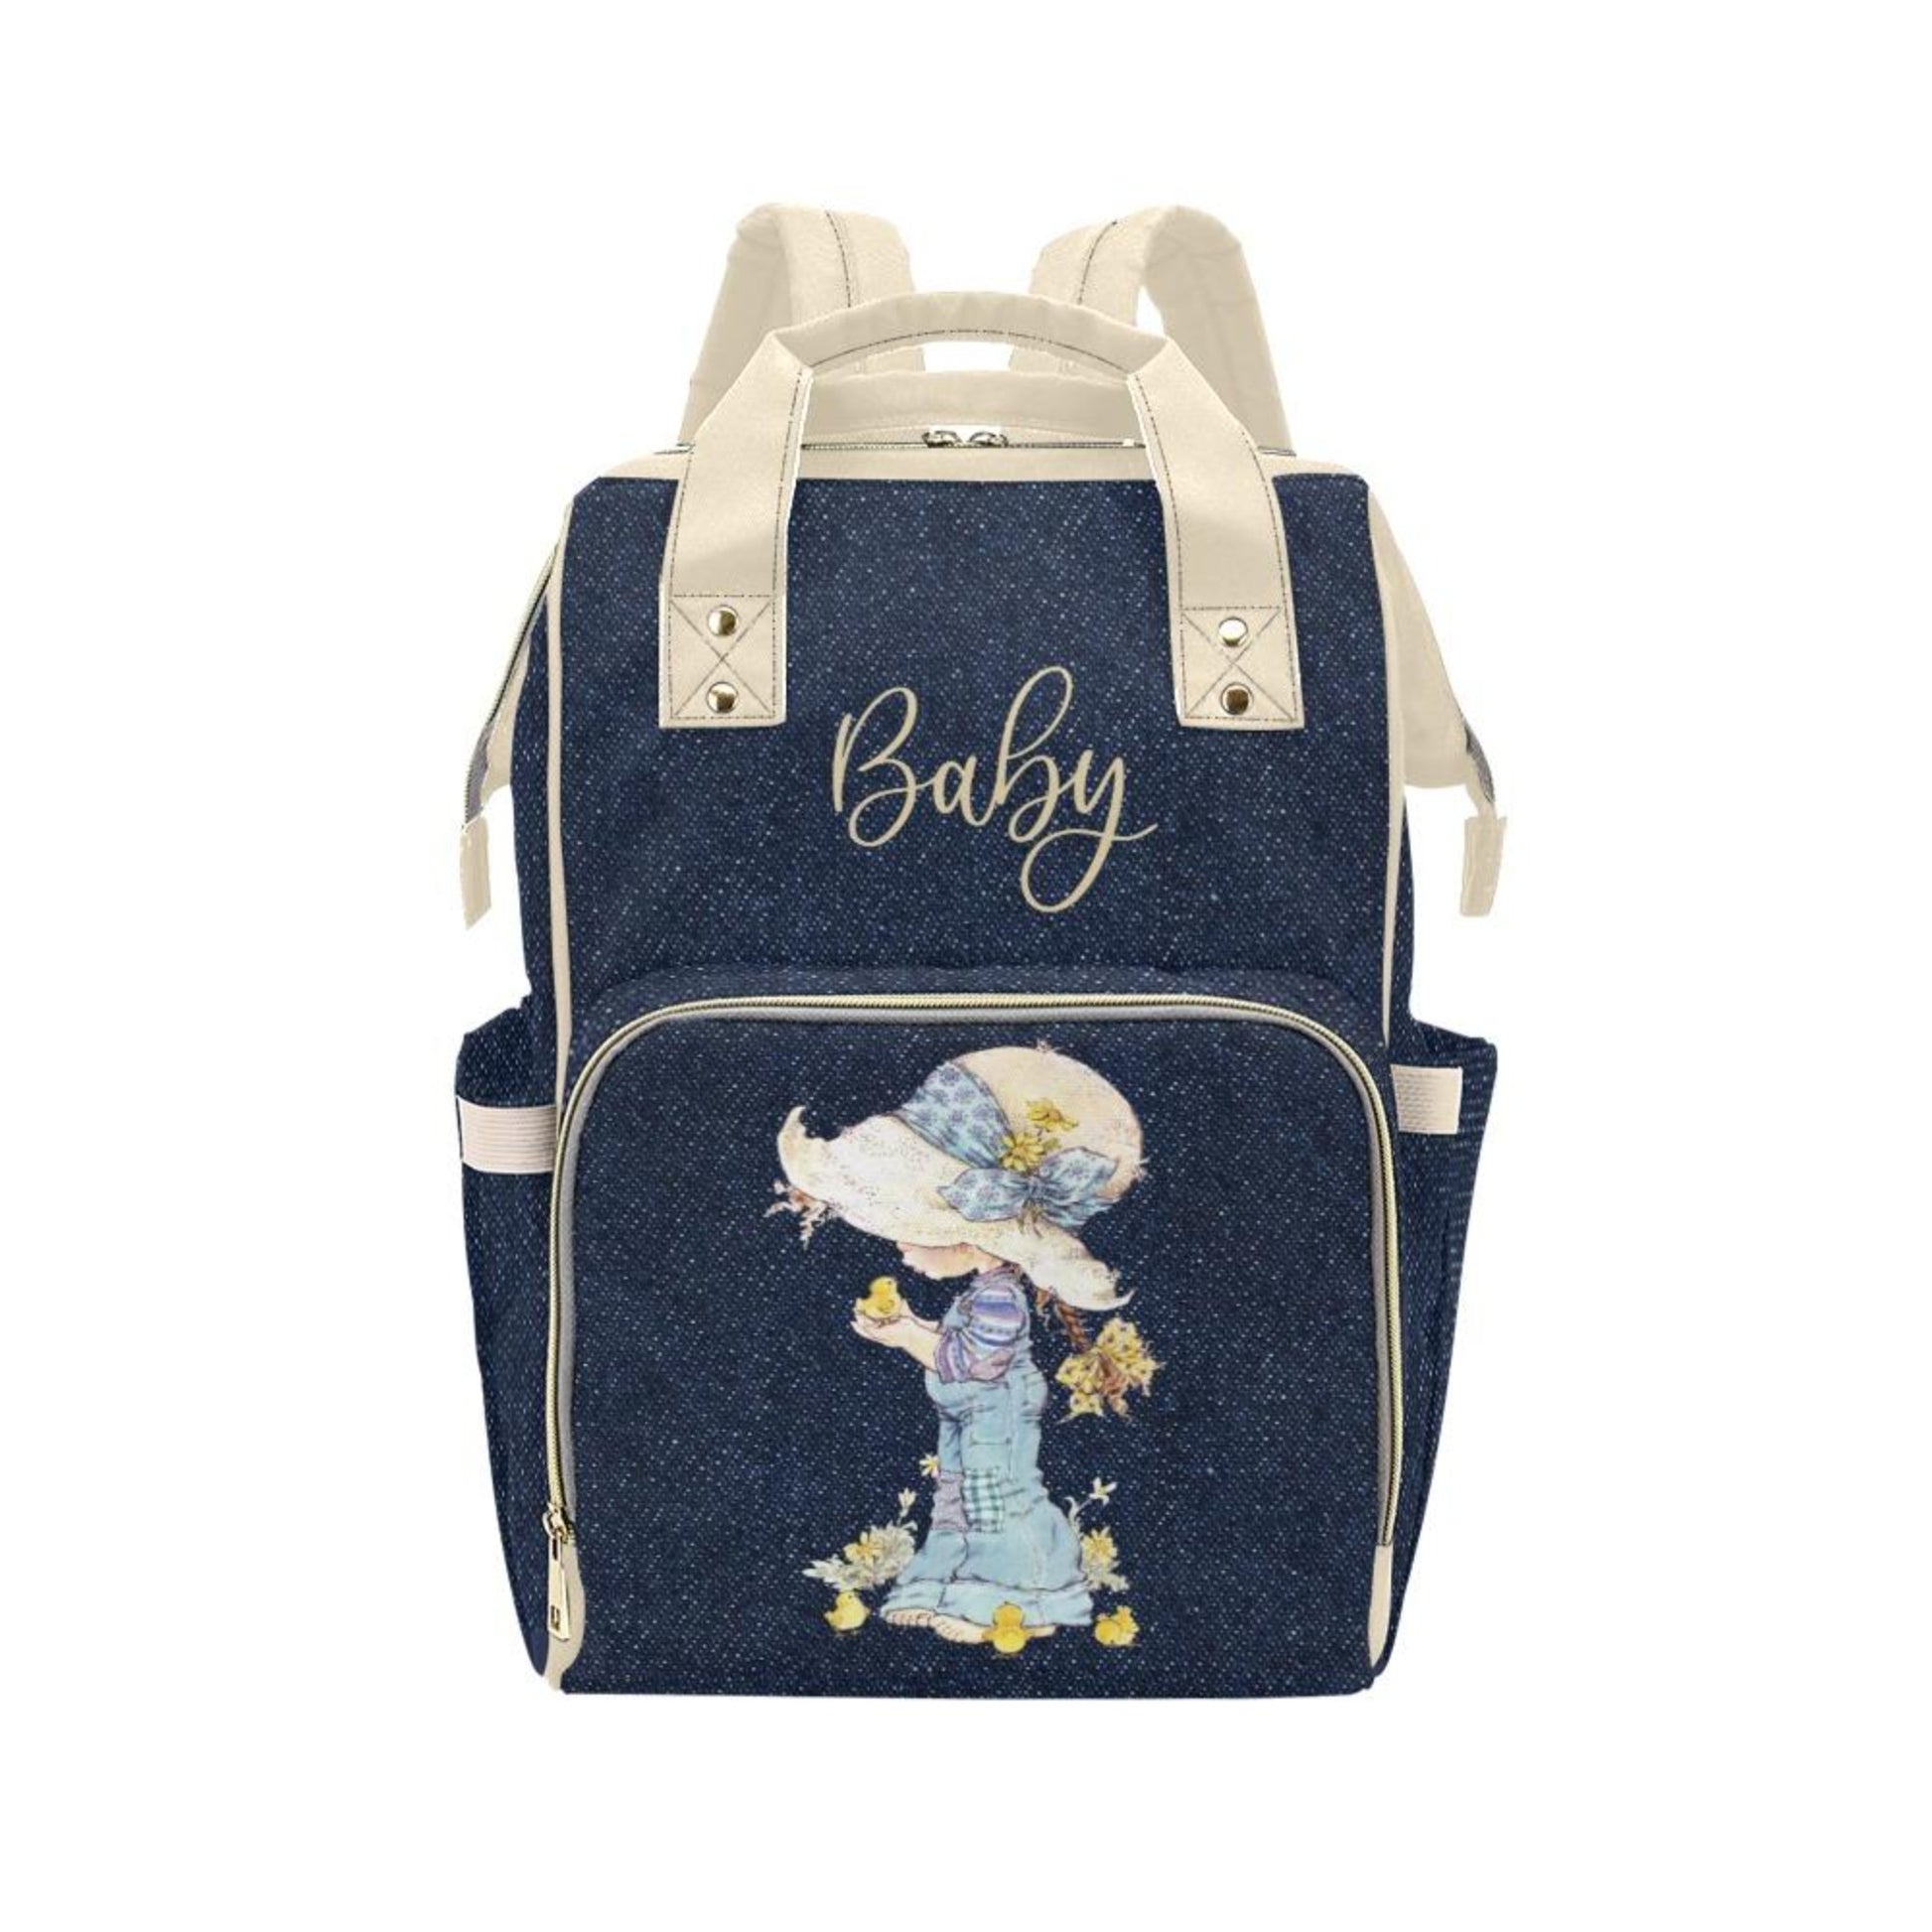 Designer Diaper Bags & Baby Bags